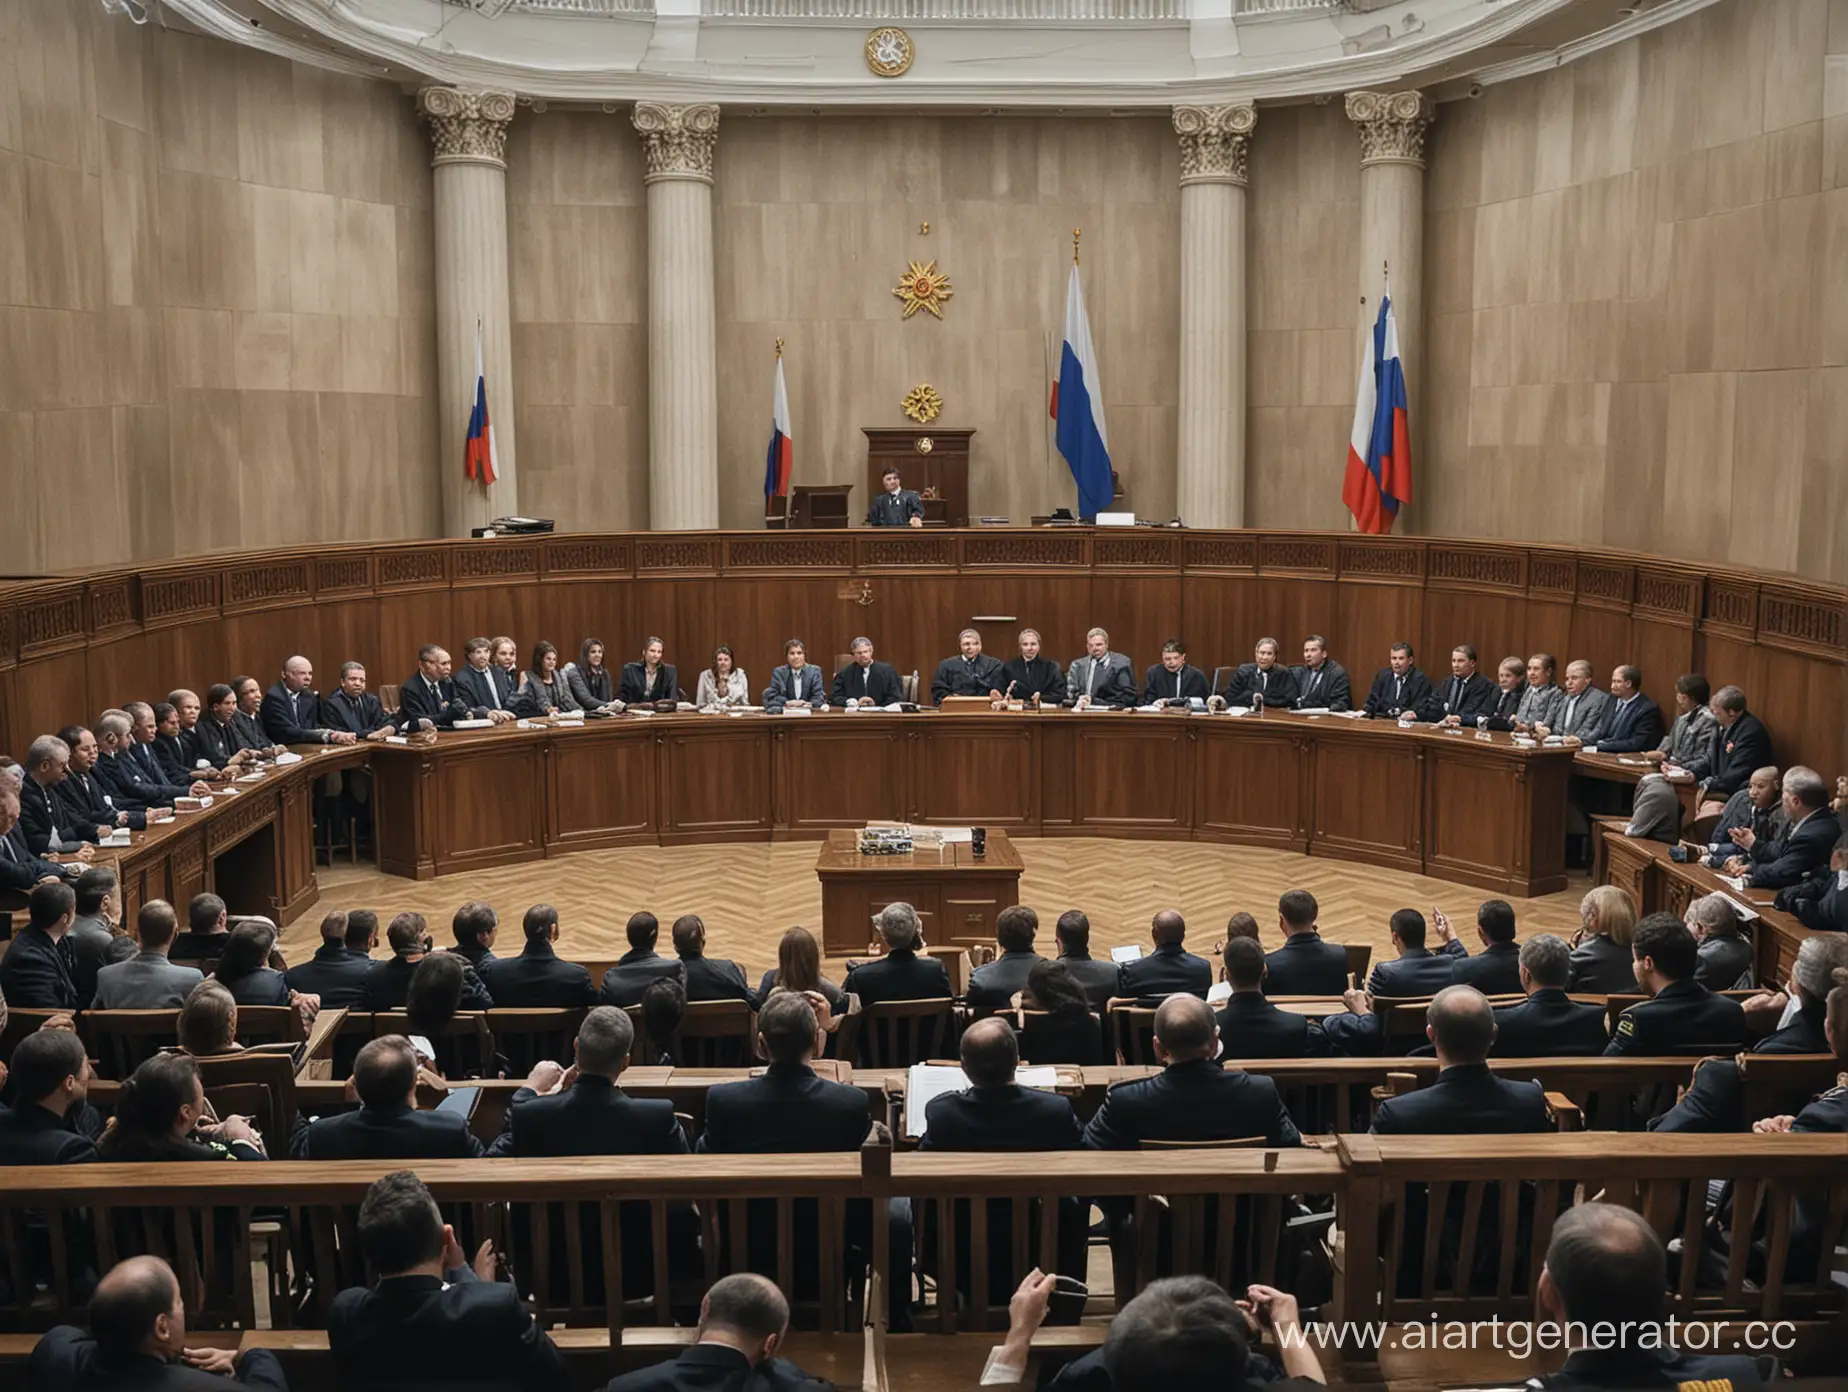 фото судебного заседания в российском суде